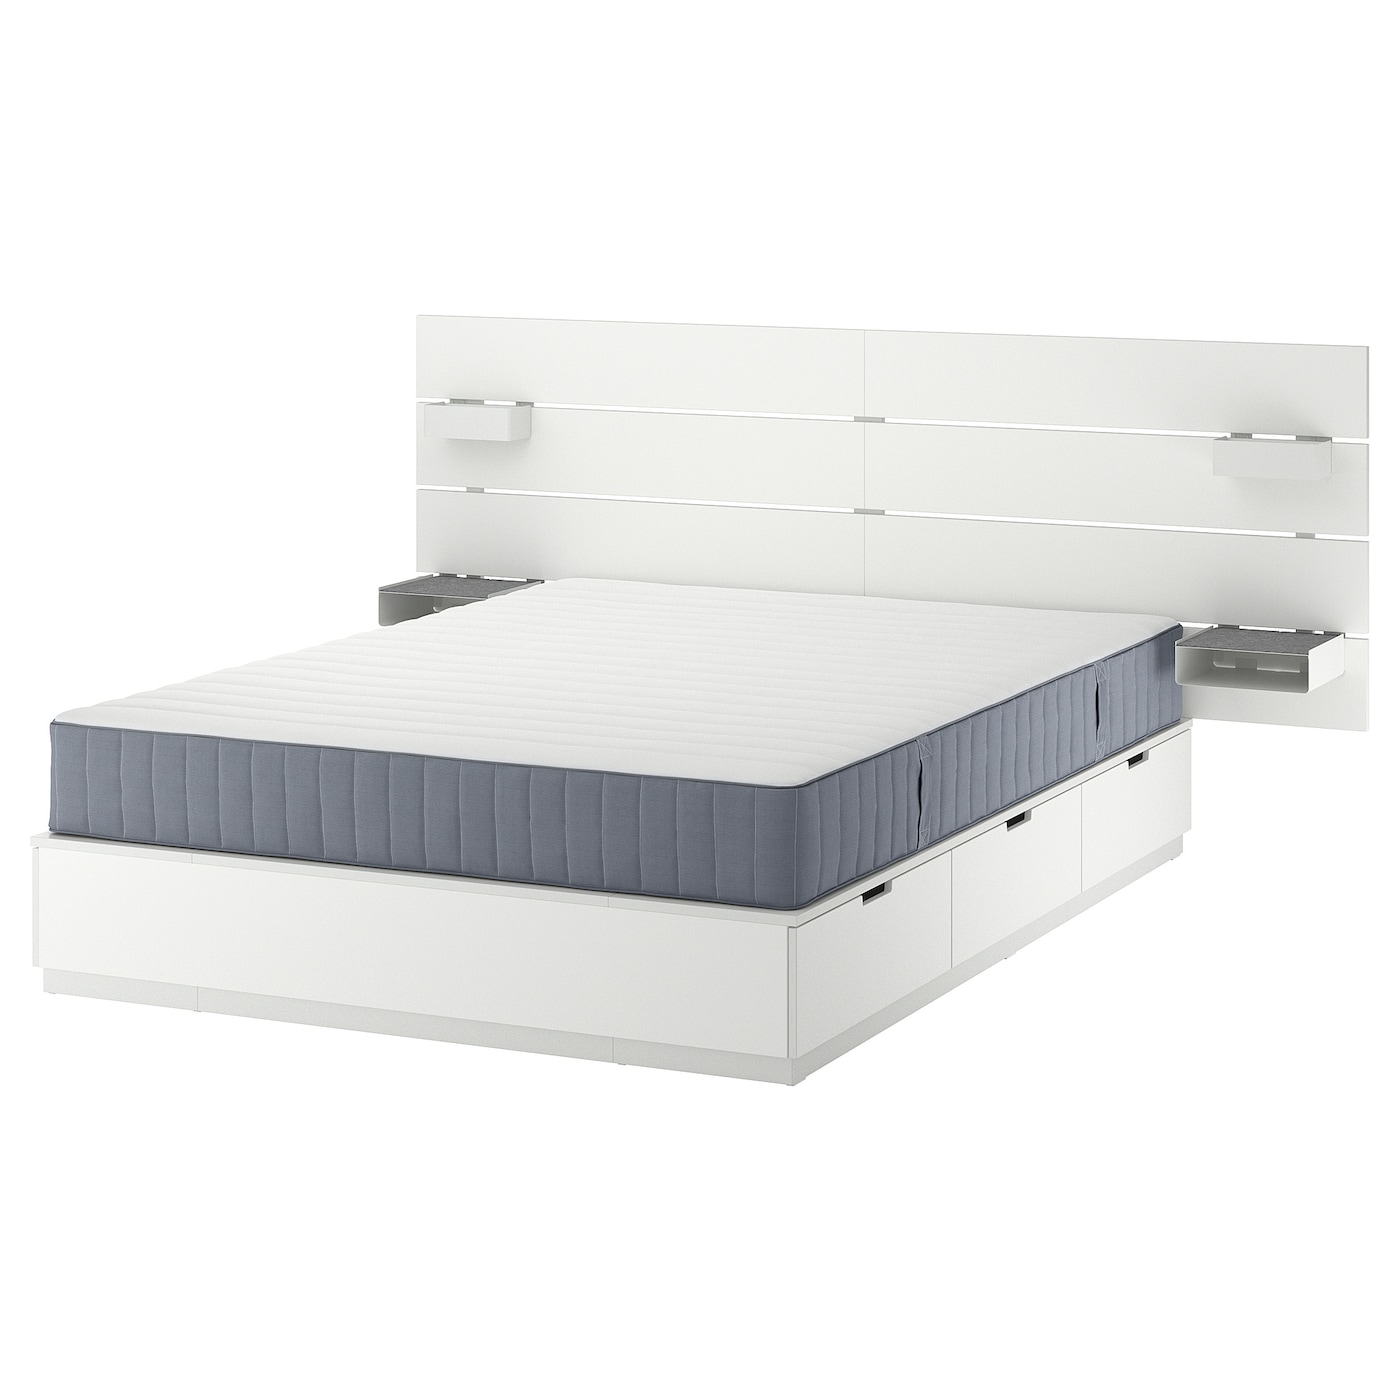 Каркас кровати с контейнером и матрасом - IKEA NORDLI, 160х200 см, матрас средней жесткости, белый, НОРДЛИ ИКЕА